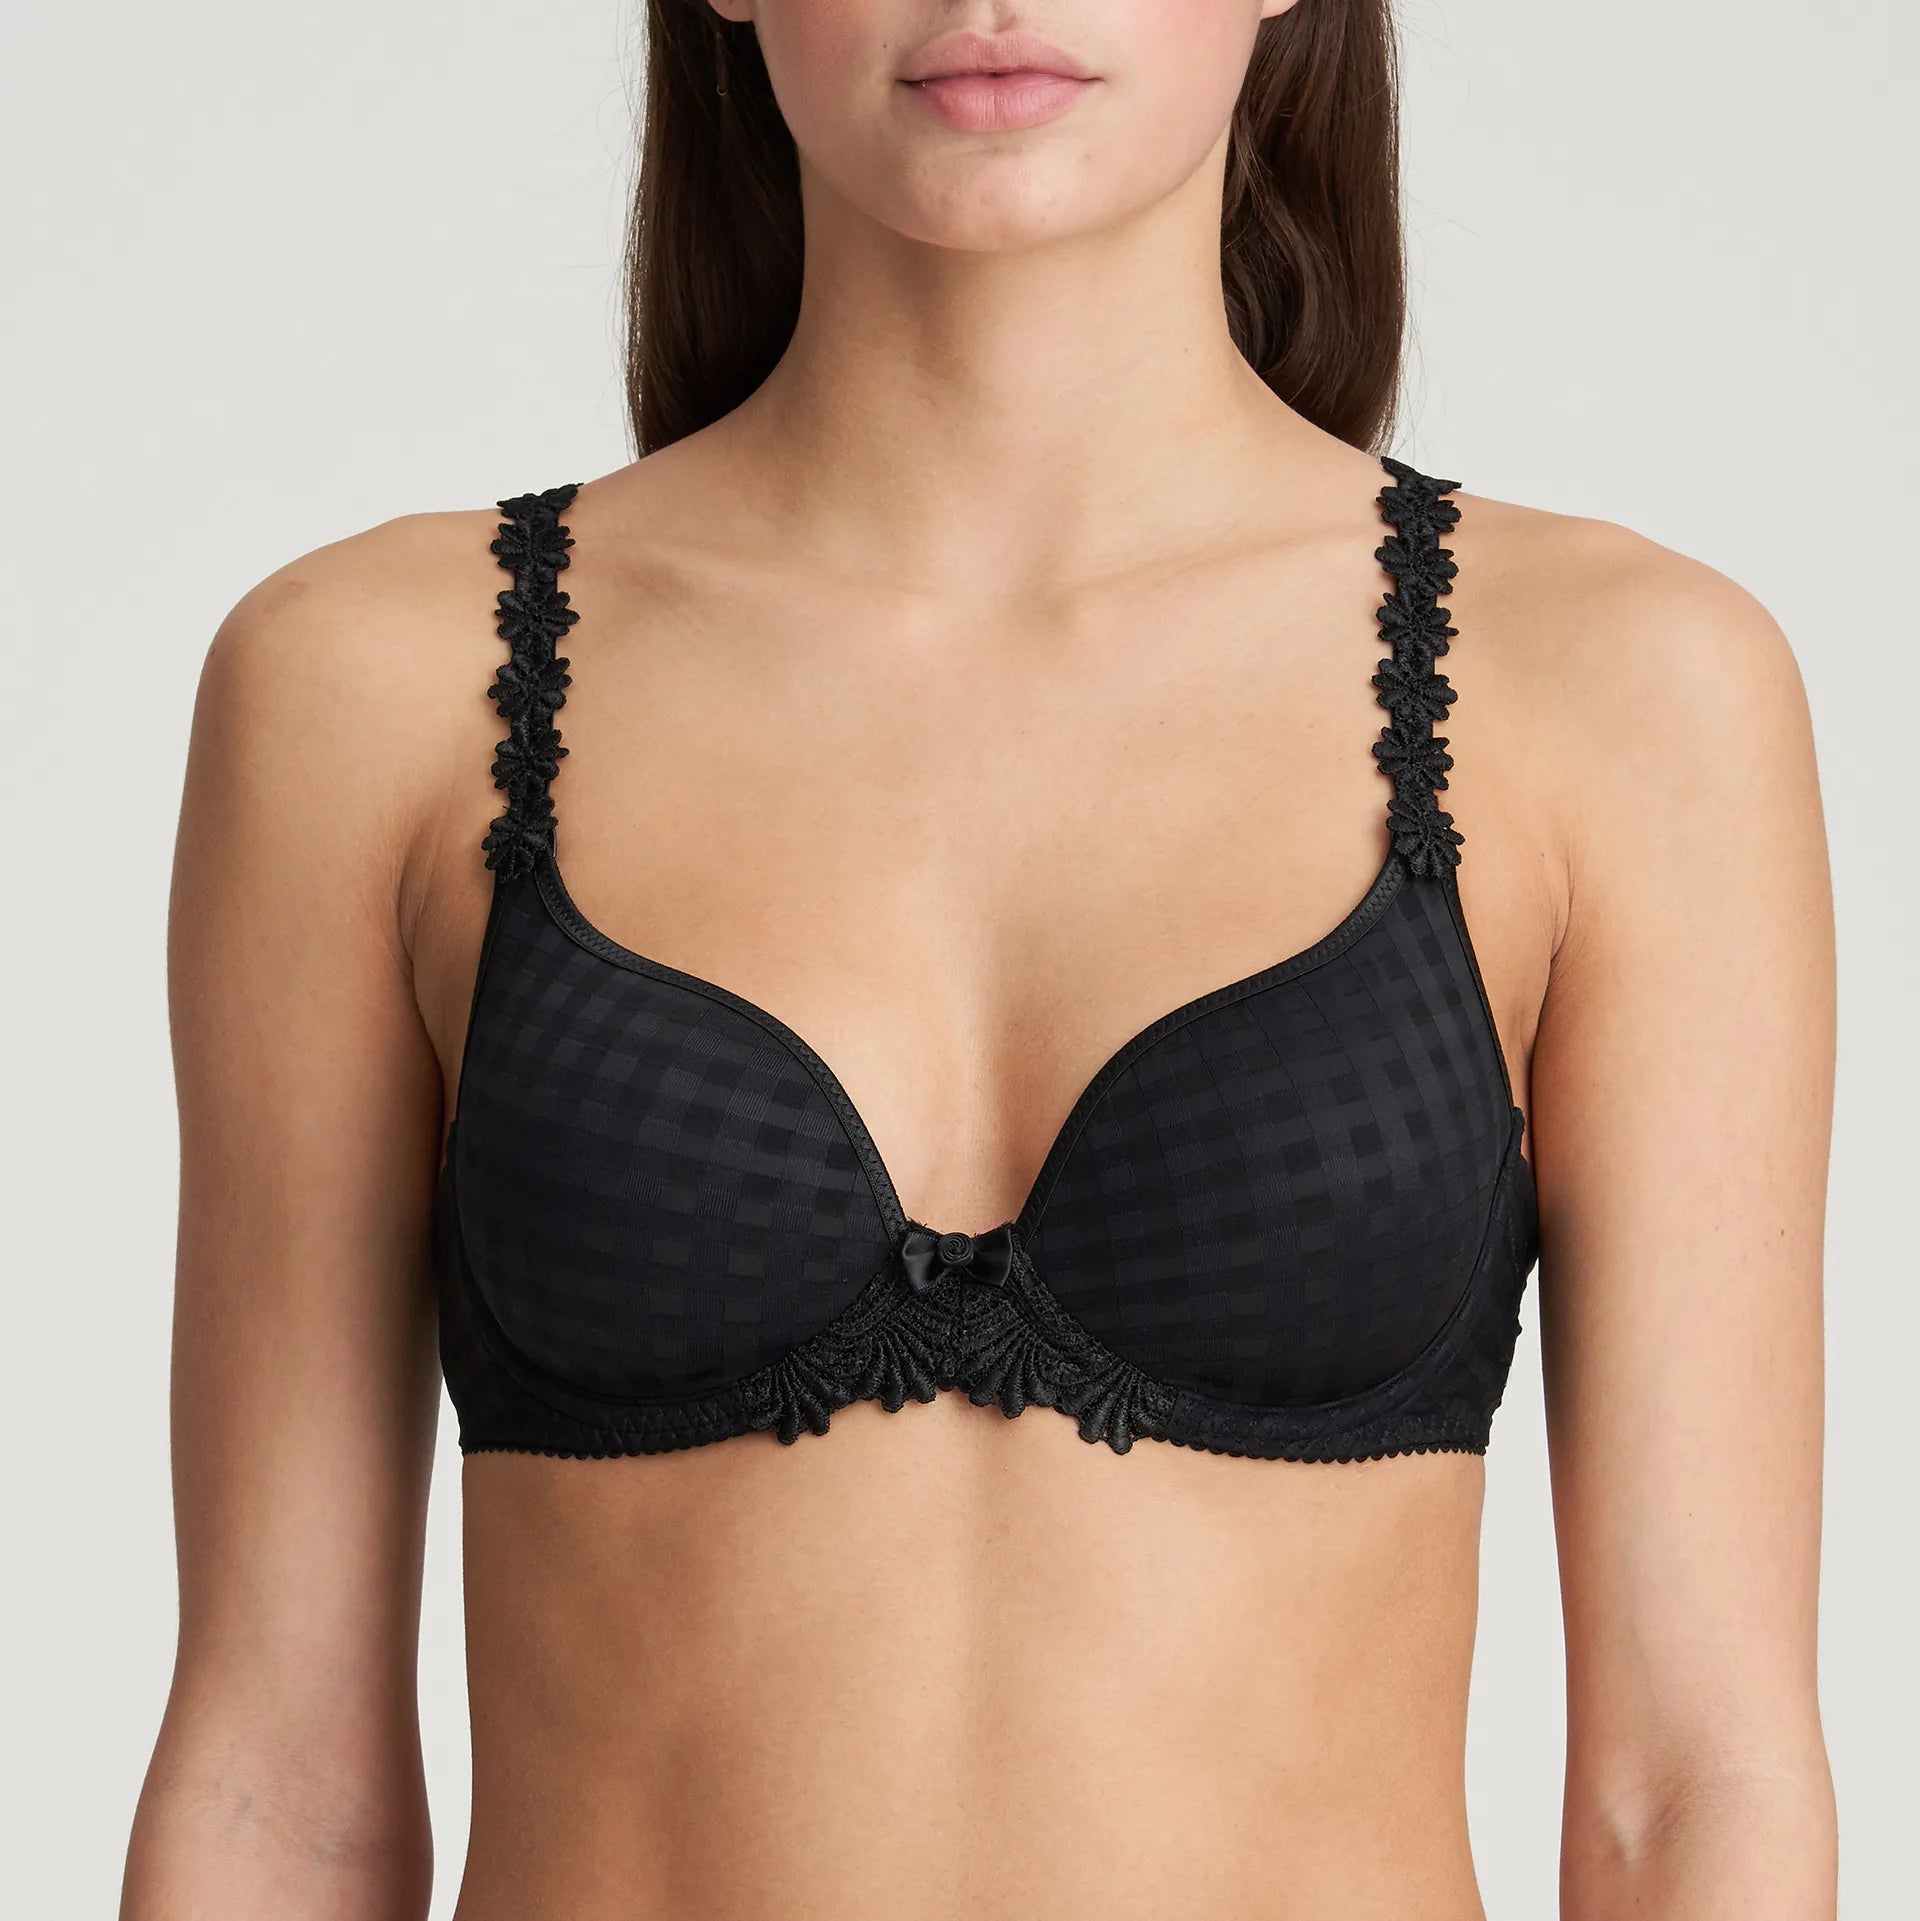 Avero Padded Heart Shape Bra in Black by Marie Jo - front view of bra on model